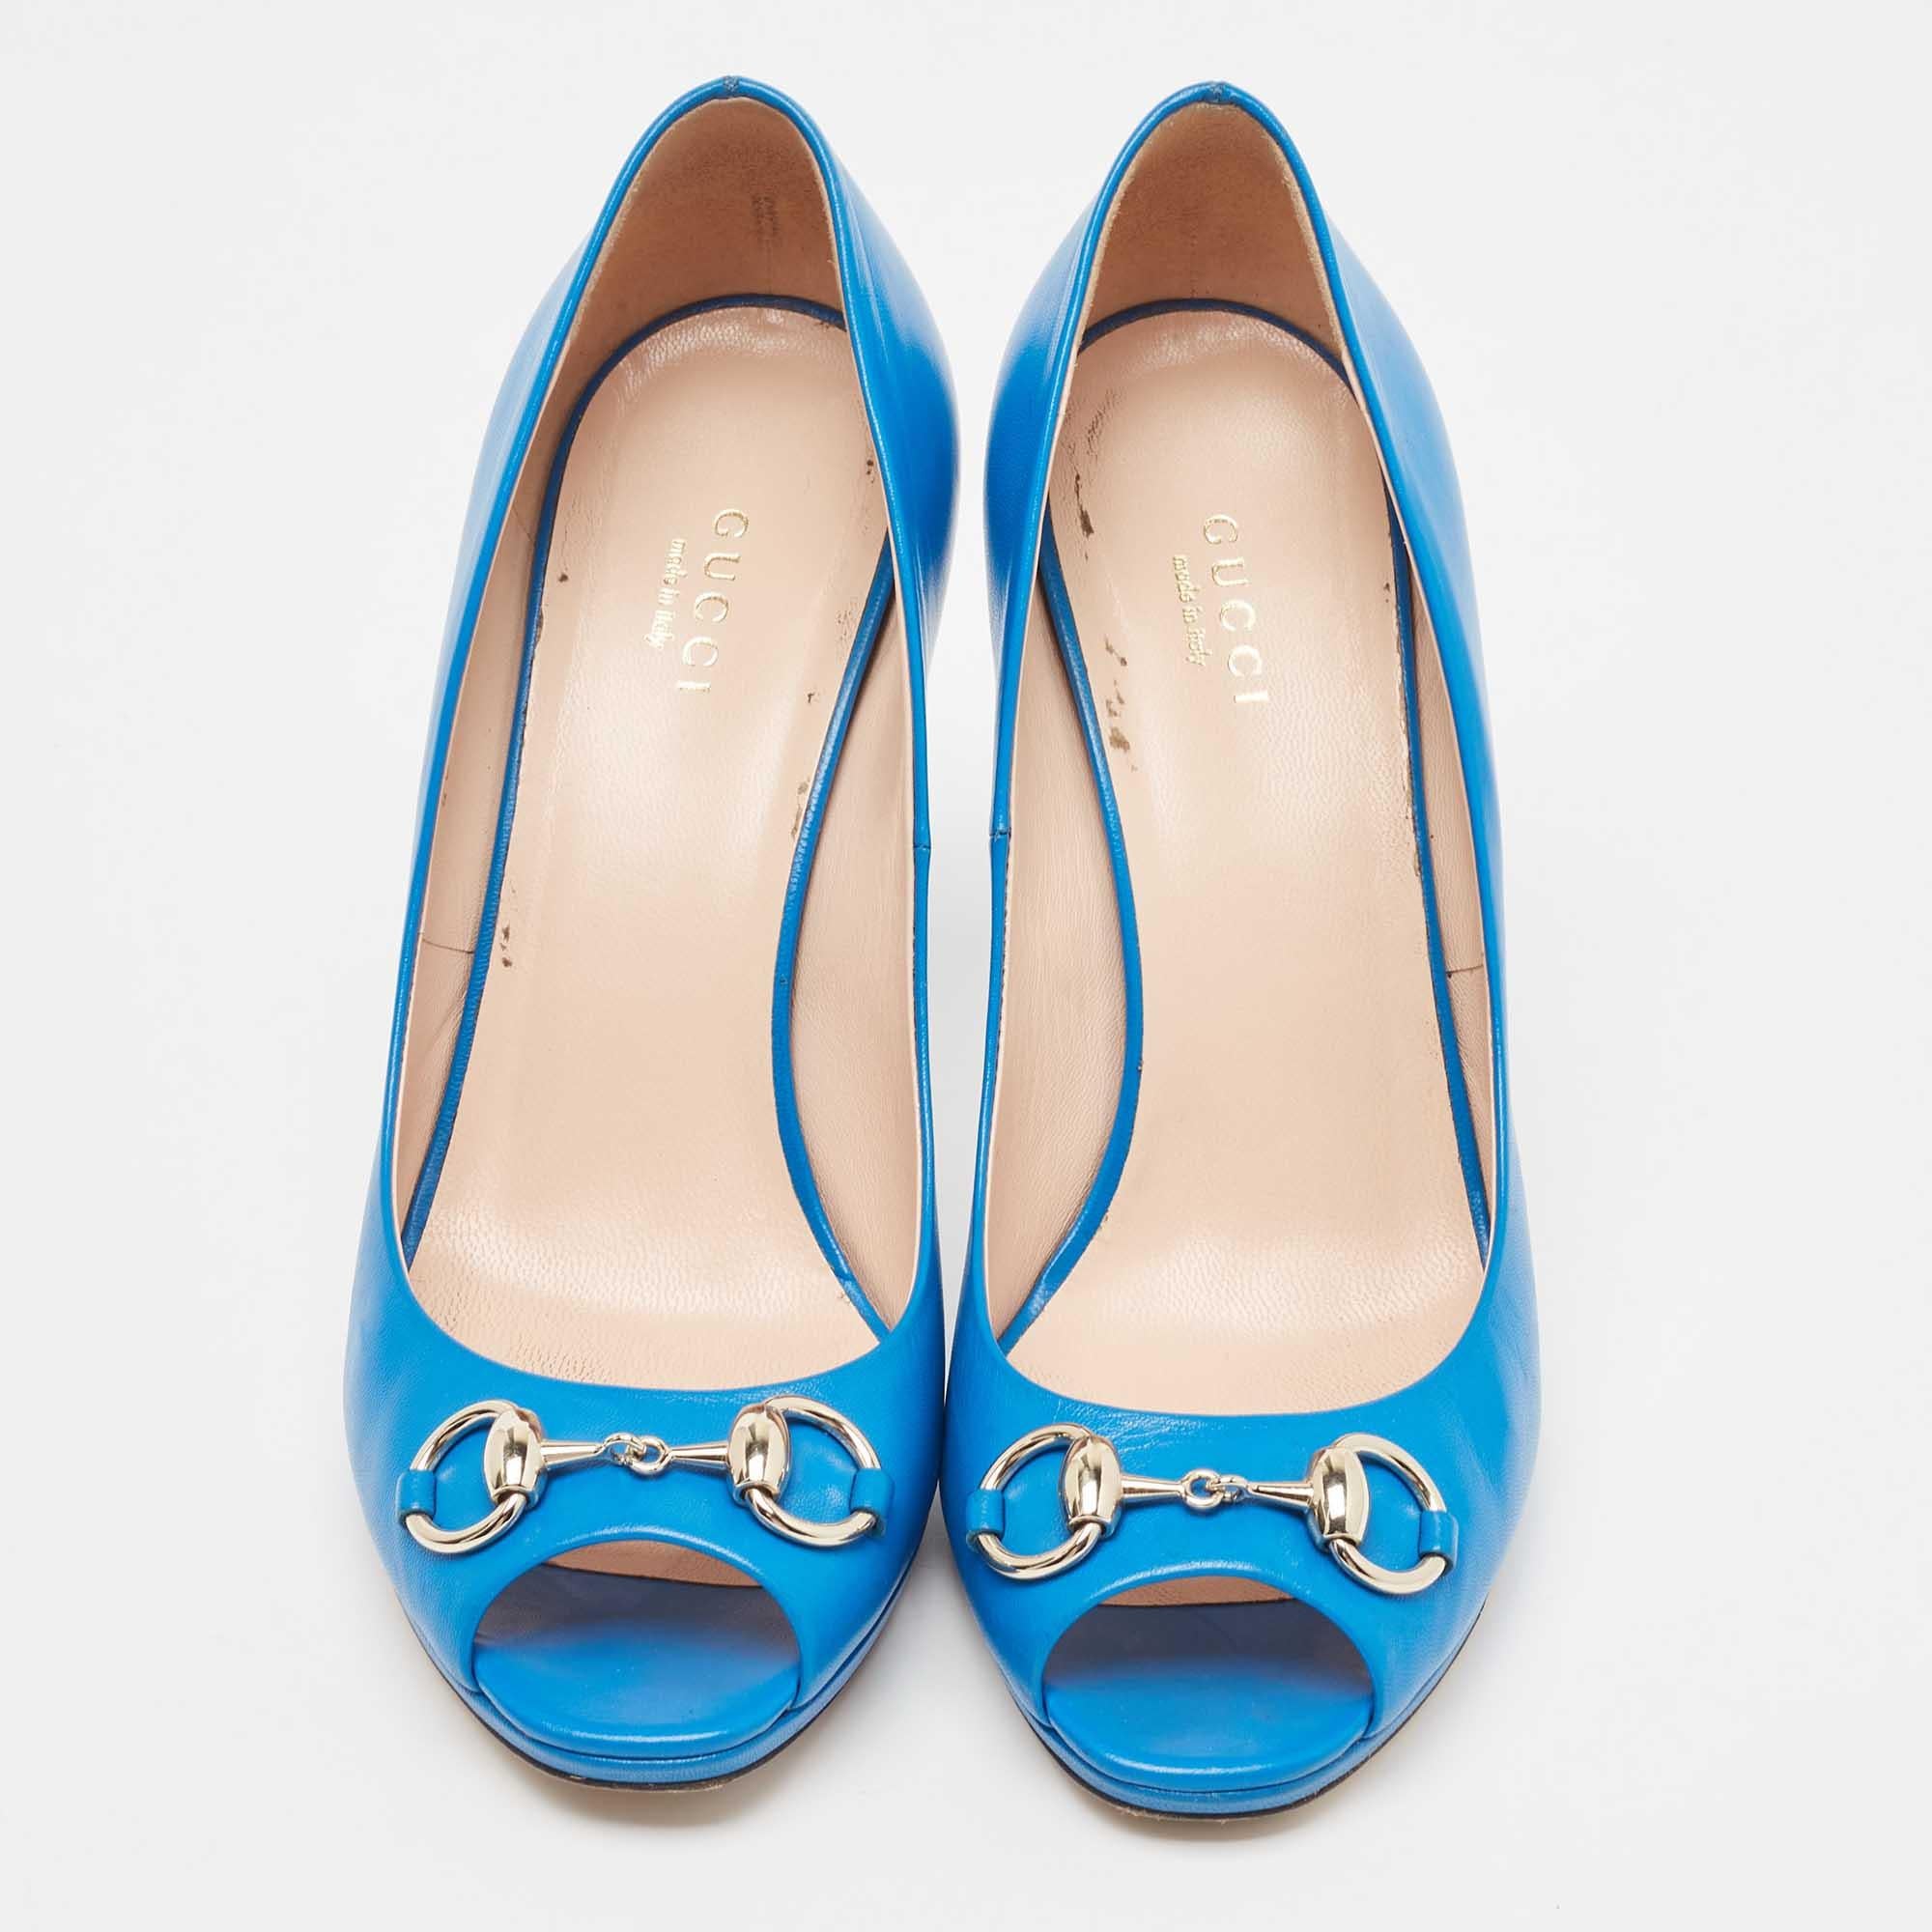 Die Tradition des Modehauses, gepaart mit modernem Design, macht diese blauen Gucci-Pumps zu einer fabelhaften Wahl. Sie helfen Ihnen, mit Leichtigkeit ein schickes Aussehen zu erzielen.

